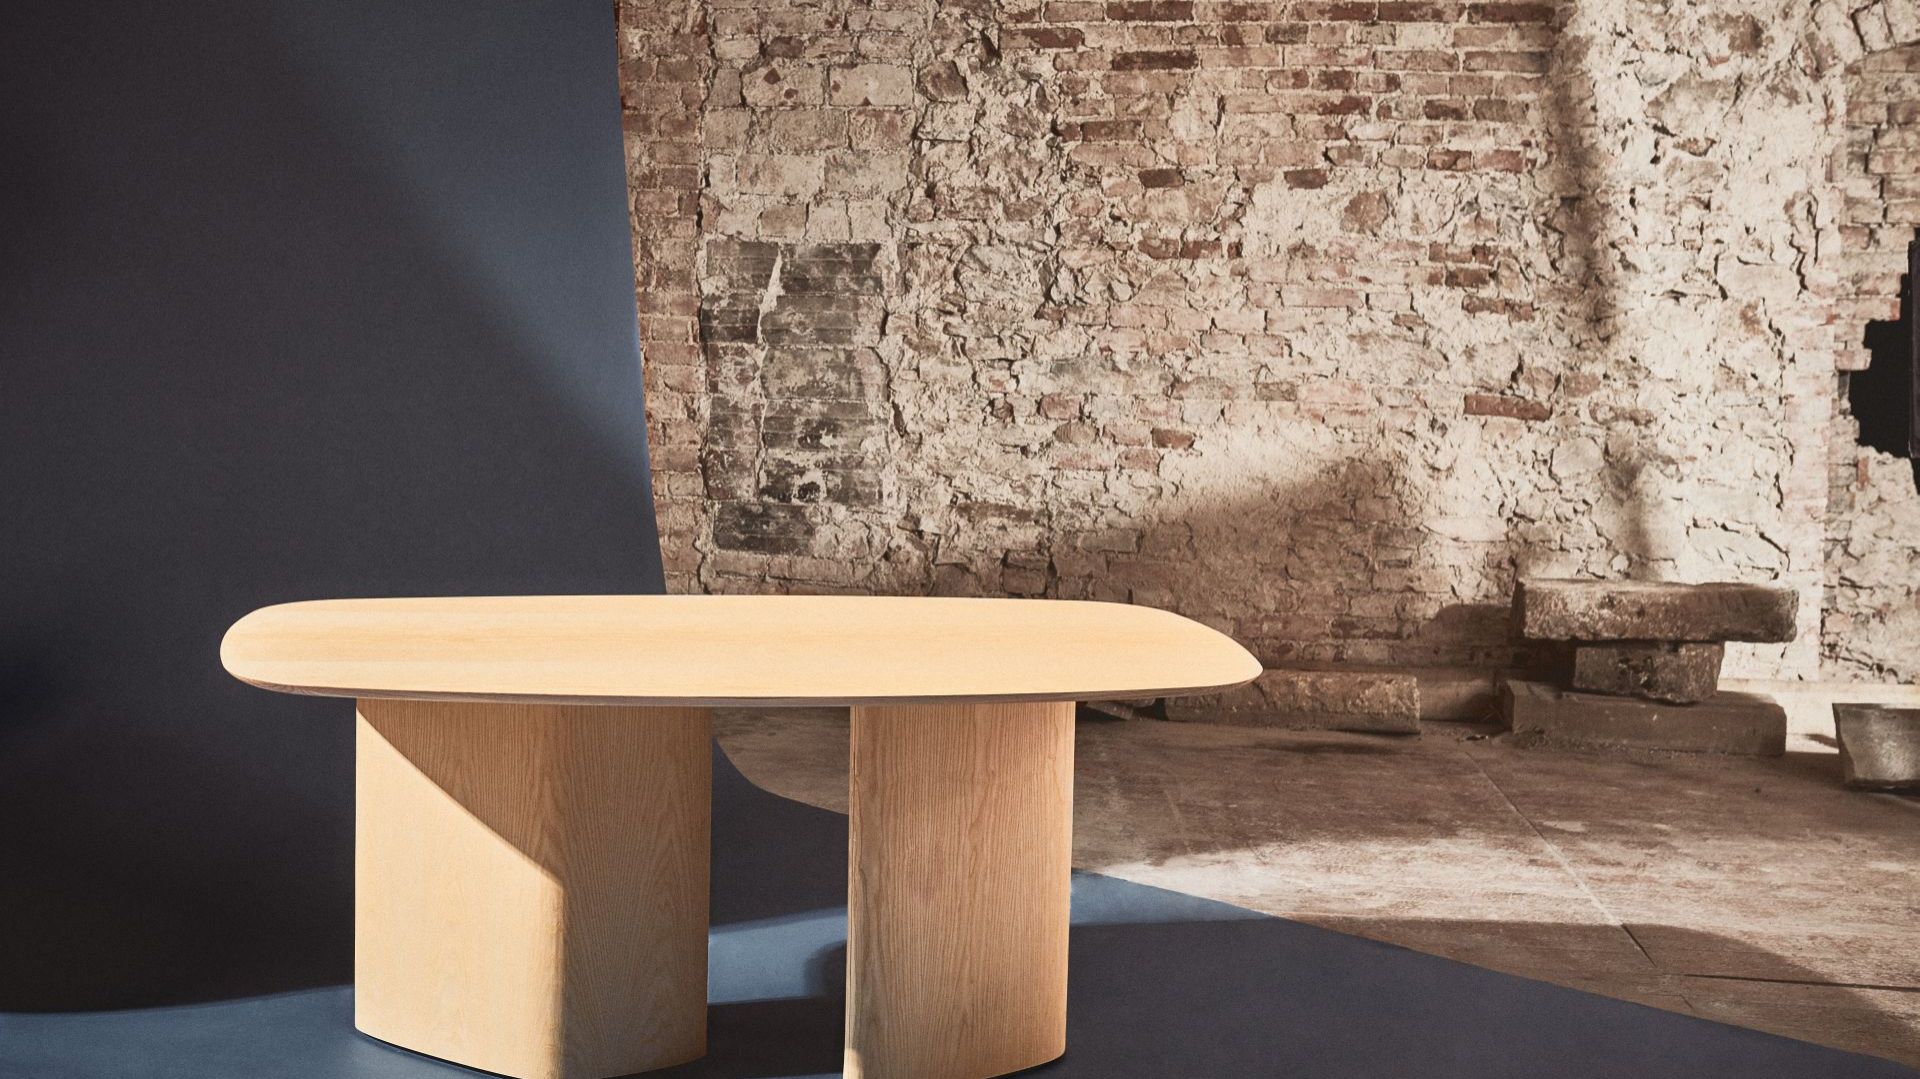 Polski design: stół inspirowany kształtami prosto z natury. To projekt Wiktorii Lenart!